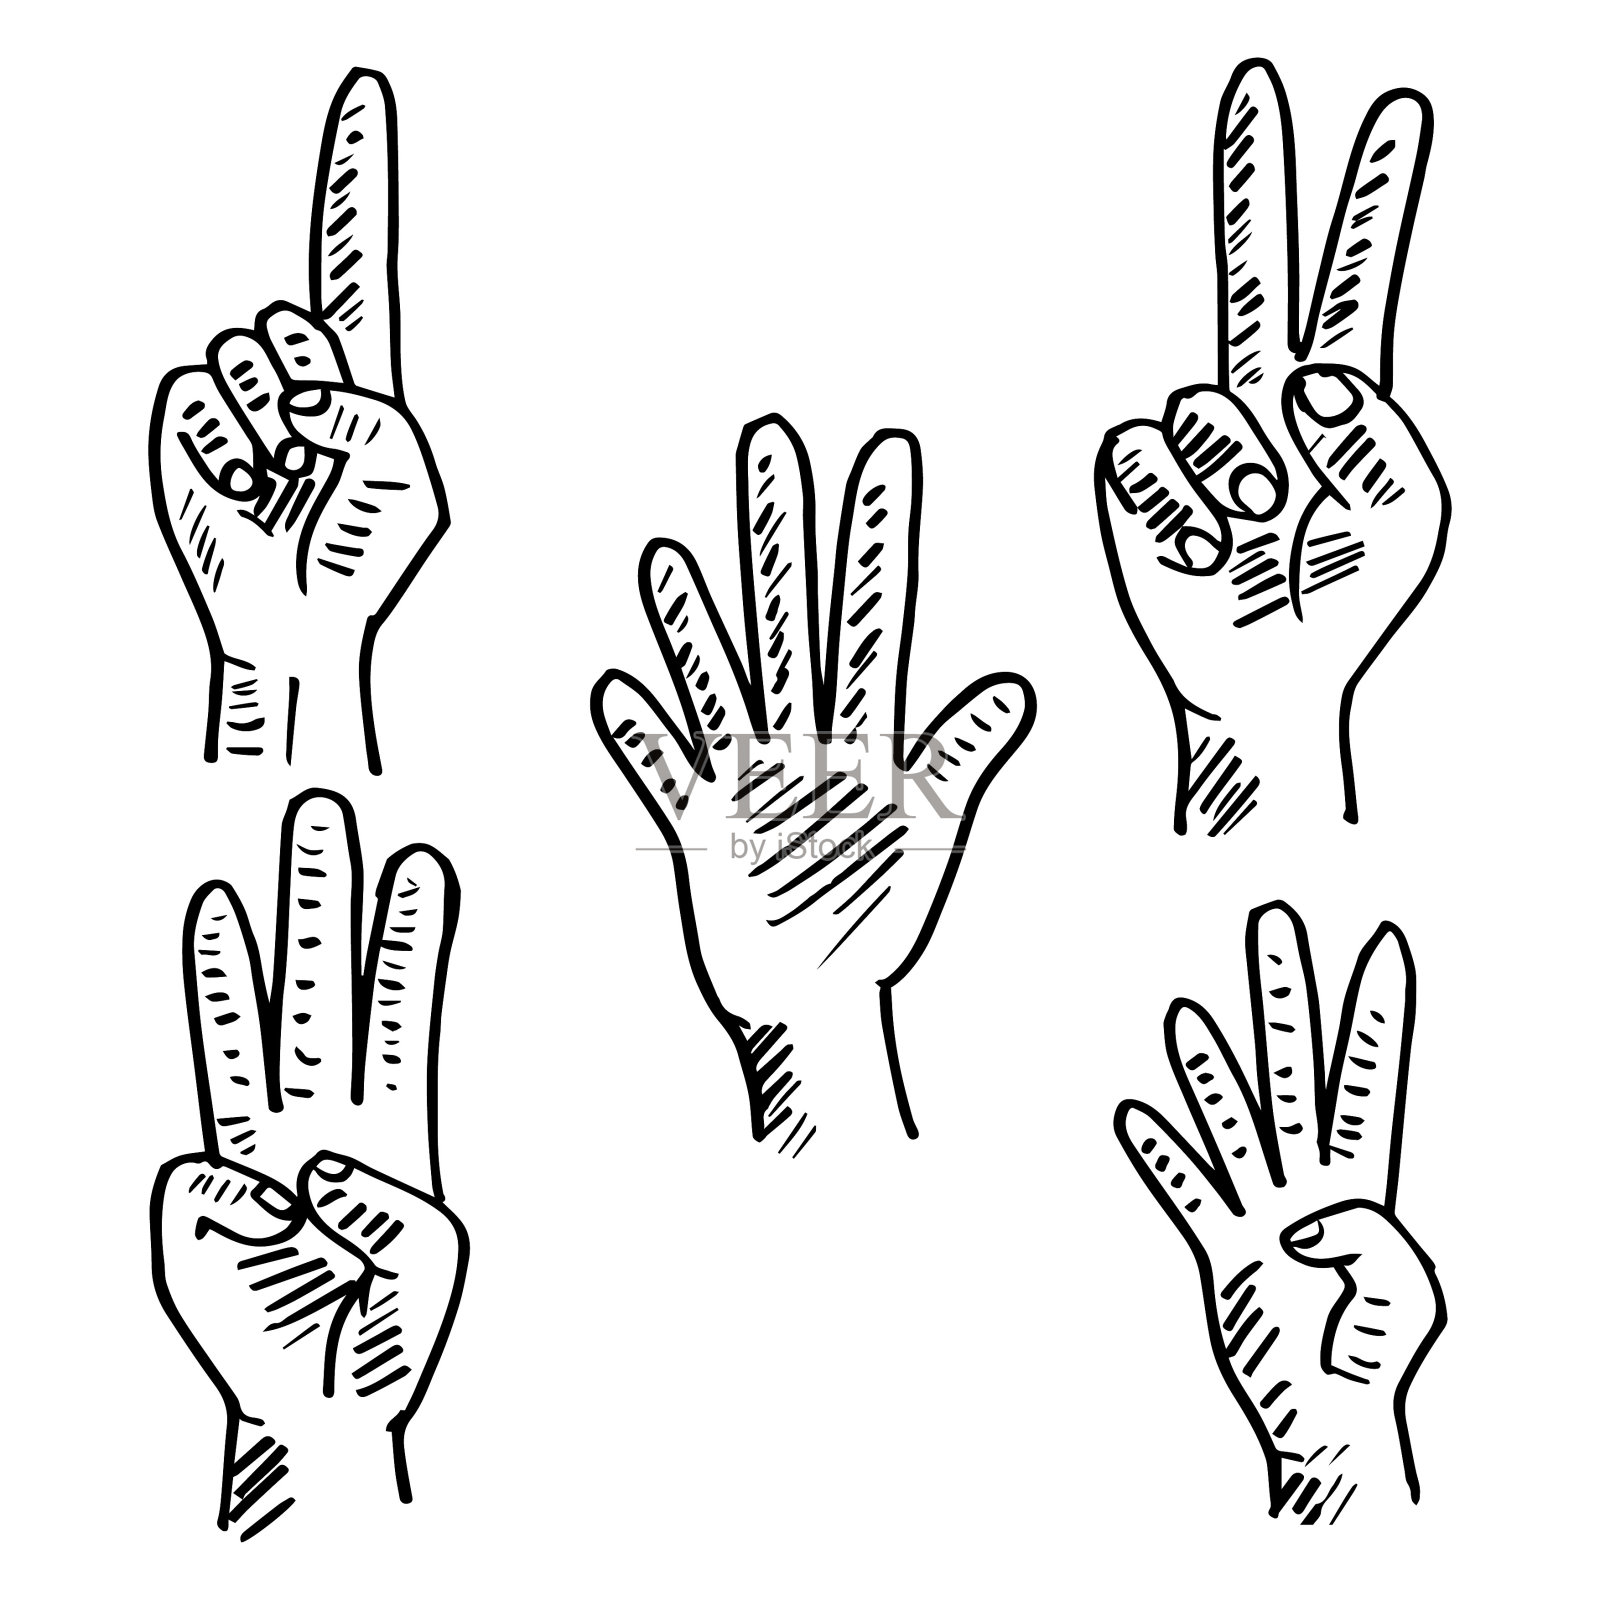 用手指展示1-5数字的手势